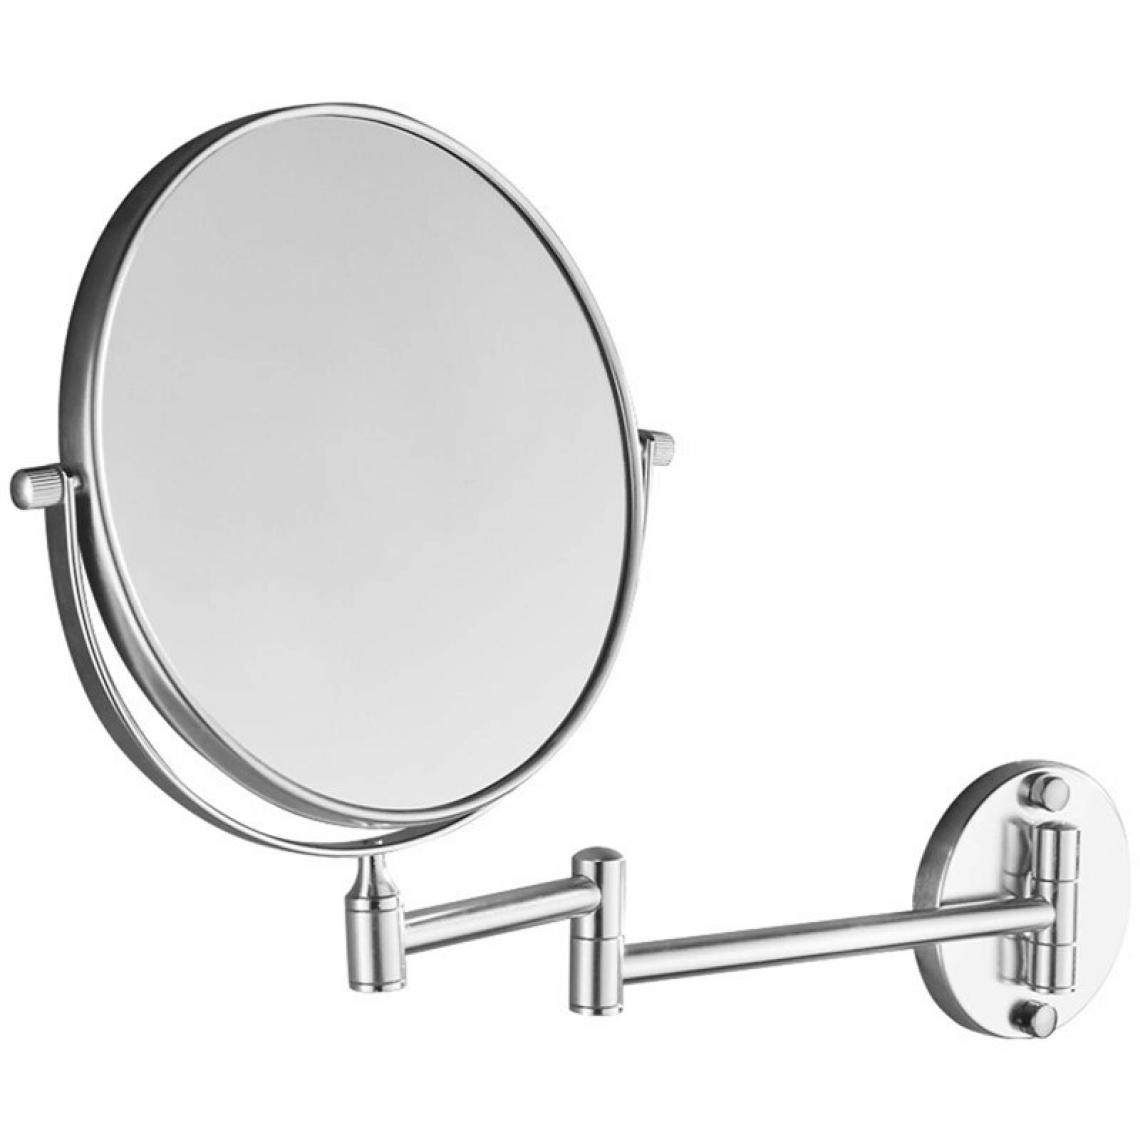 Universal - Montage mural miroir de salle de bains 360 degrés rétractable pliant 2 visage double bain miroir de maquillage pour les femmes et les hommes(Argent) - Miroir de salle de bain